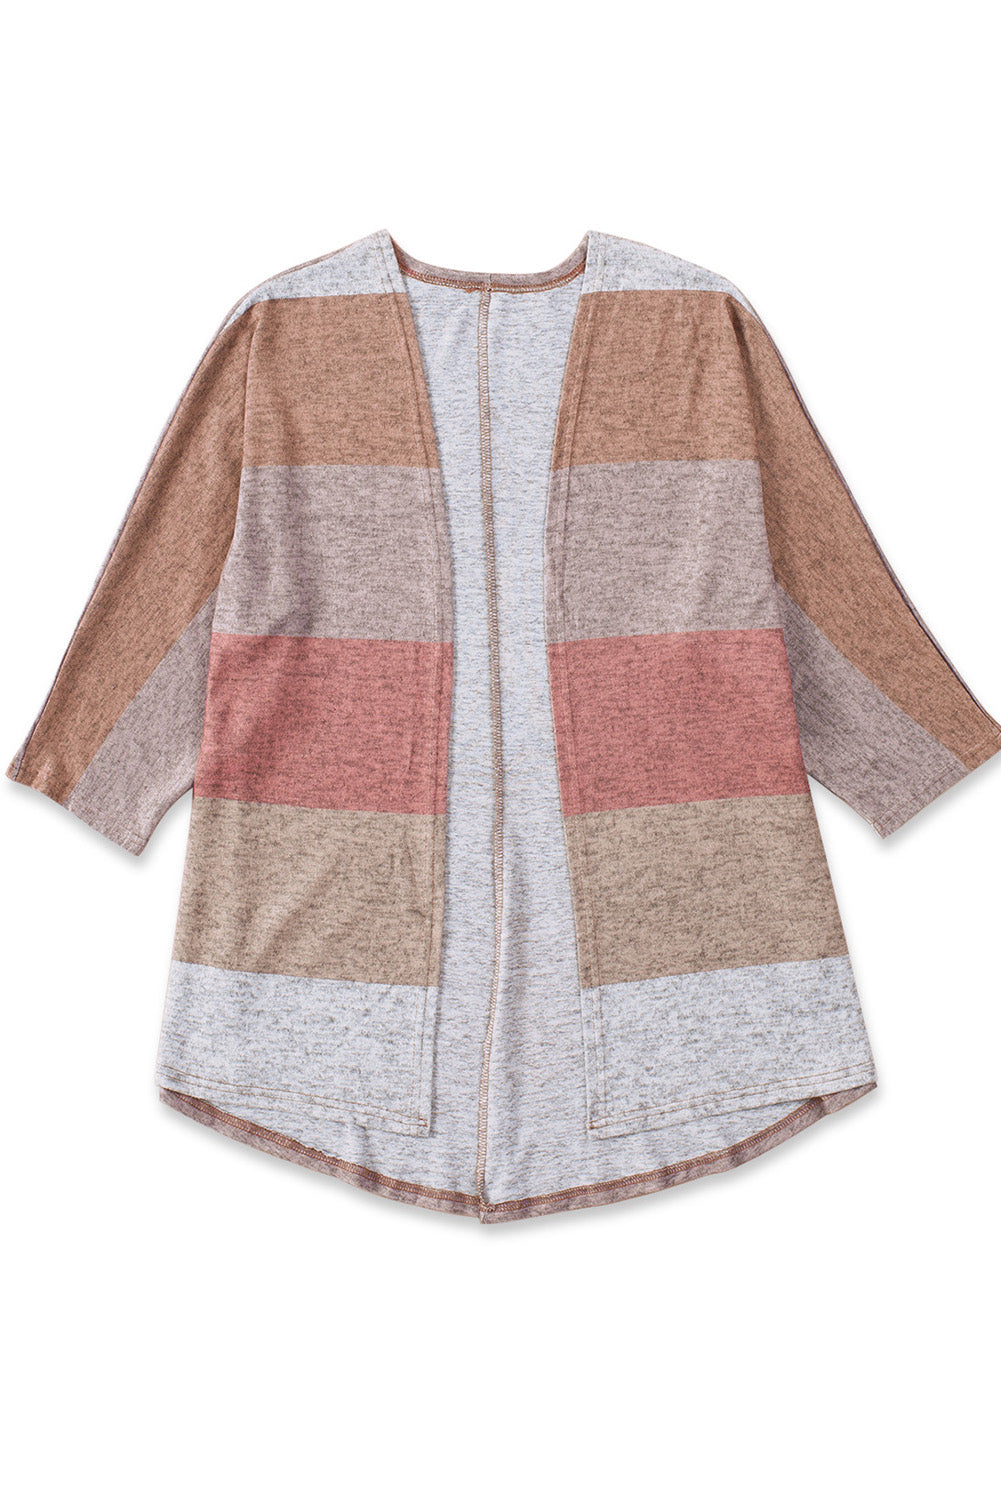 Multicolor Plus Size Colorblock Knit Cardigan